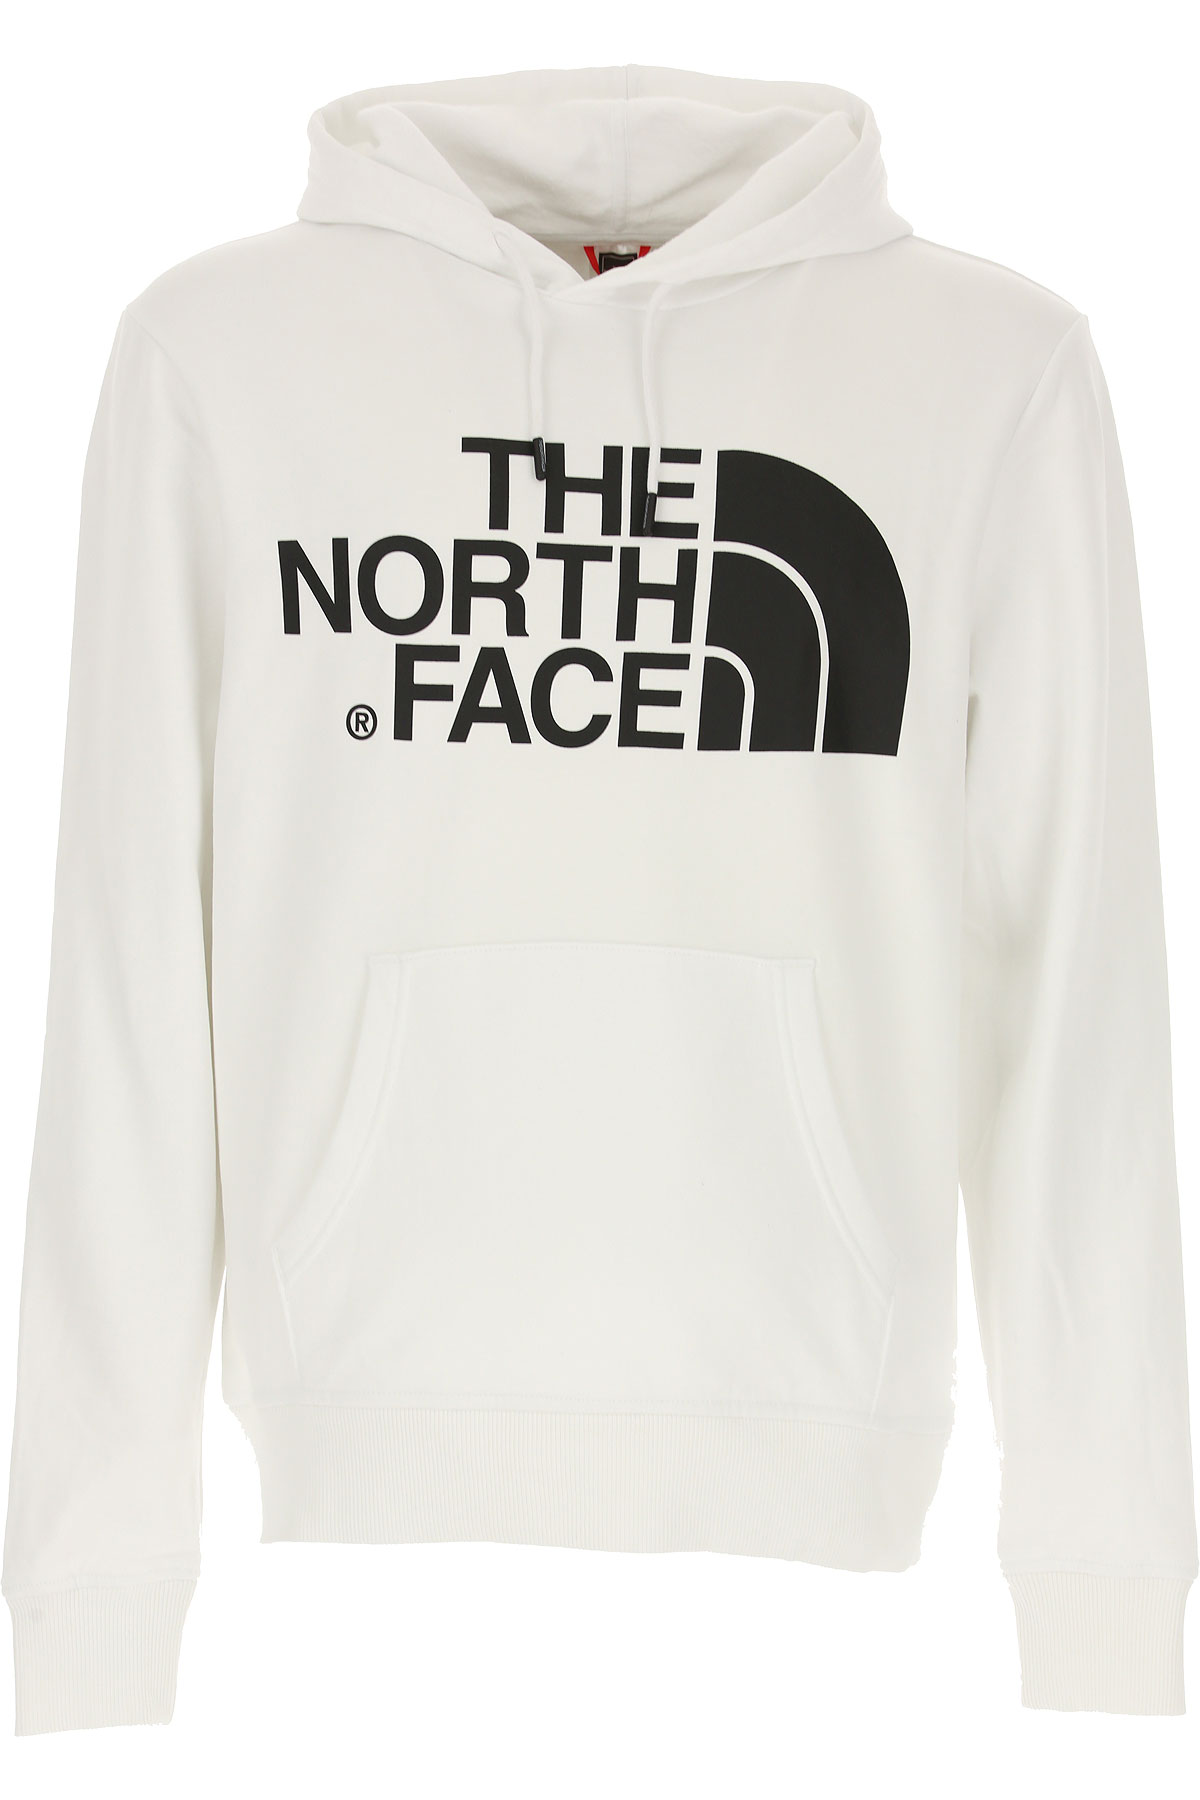 The North Face Sweatshirt für Herren, Kapuzenpulli, Hoodie, Sweats Günstig im Sale, Weiss, Baumwolle, 2017, M S